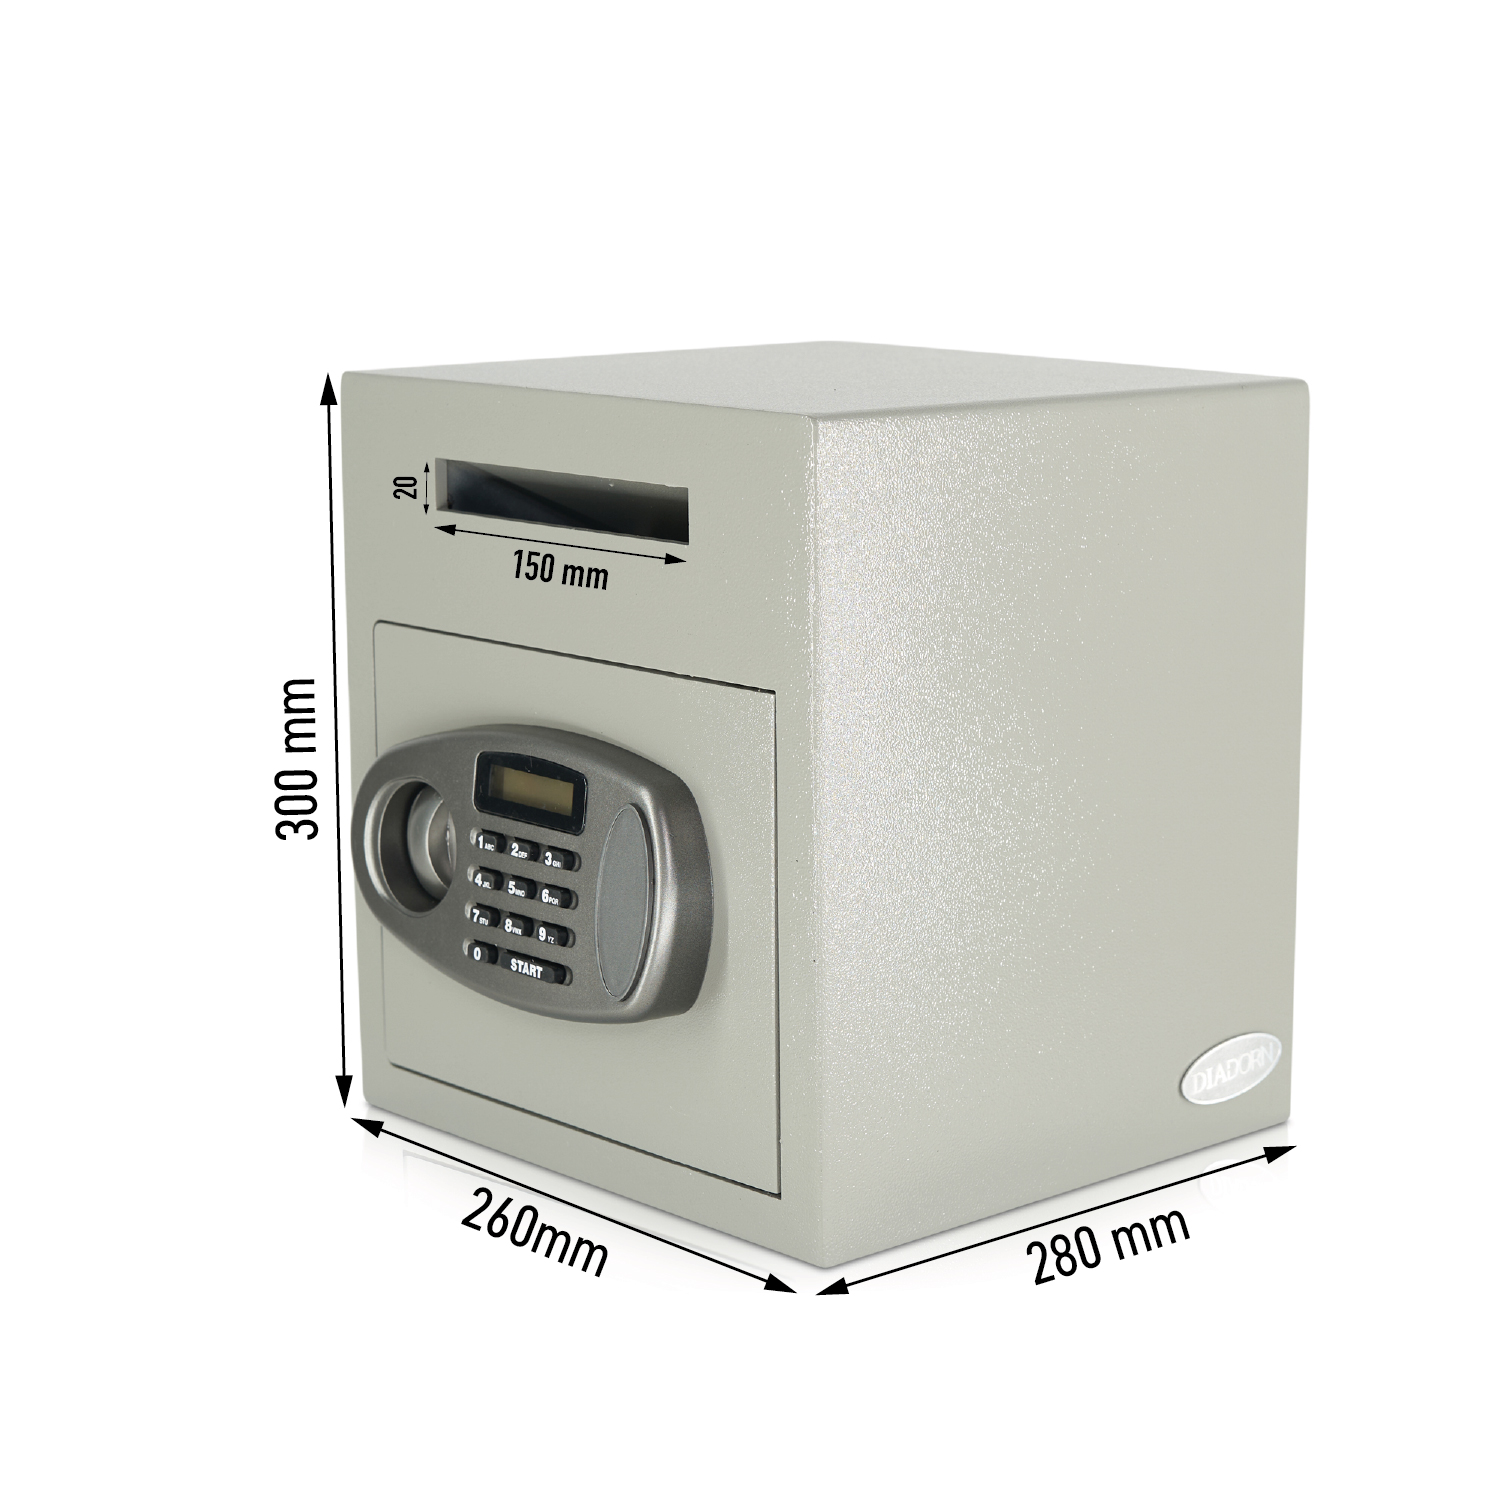 Caja de depósito | Clientes comerciales | Cerradura electrónica con código PIN | Depositsafe